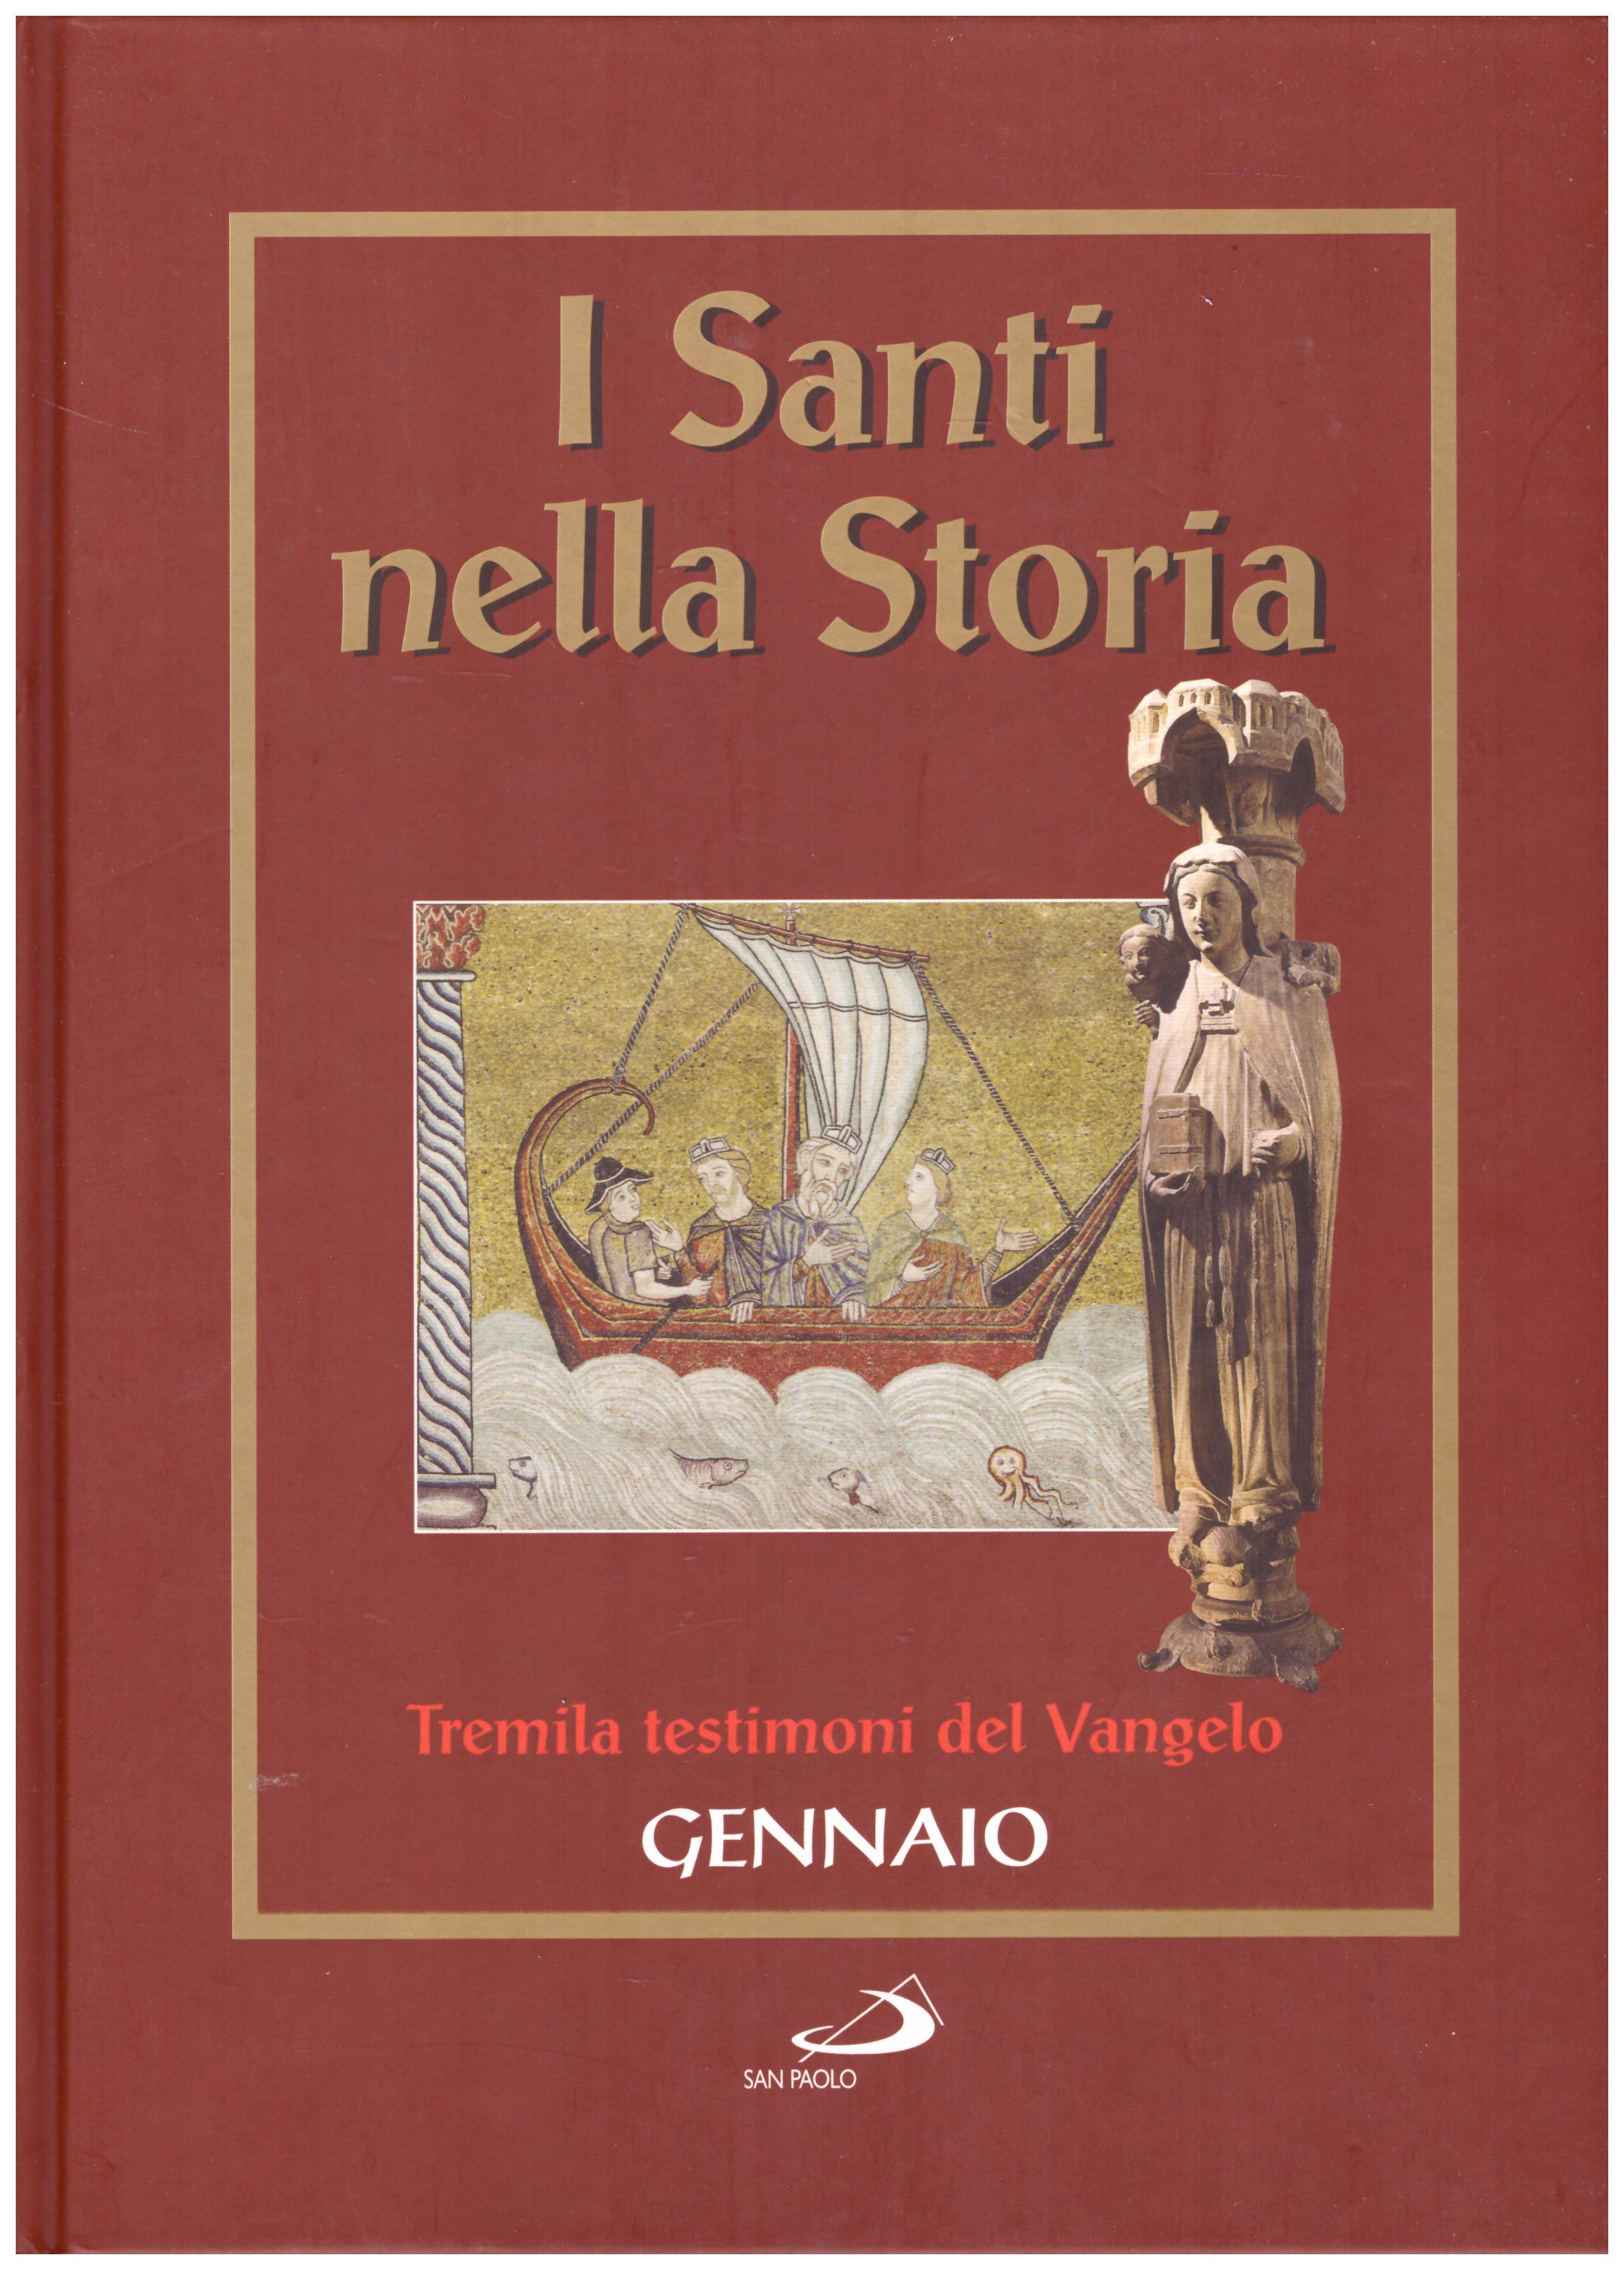 Titolo: I santi nella storia, Gennaio Autore: AA.VV.  Editore: San Paolo, 2006